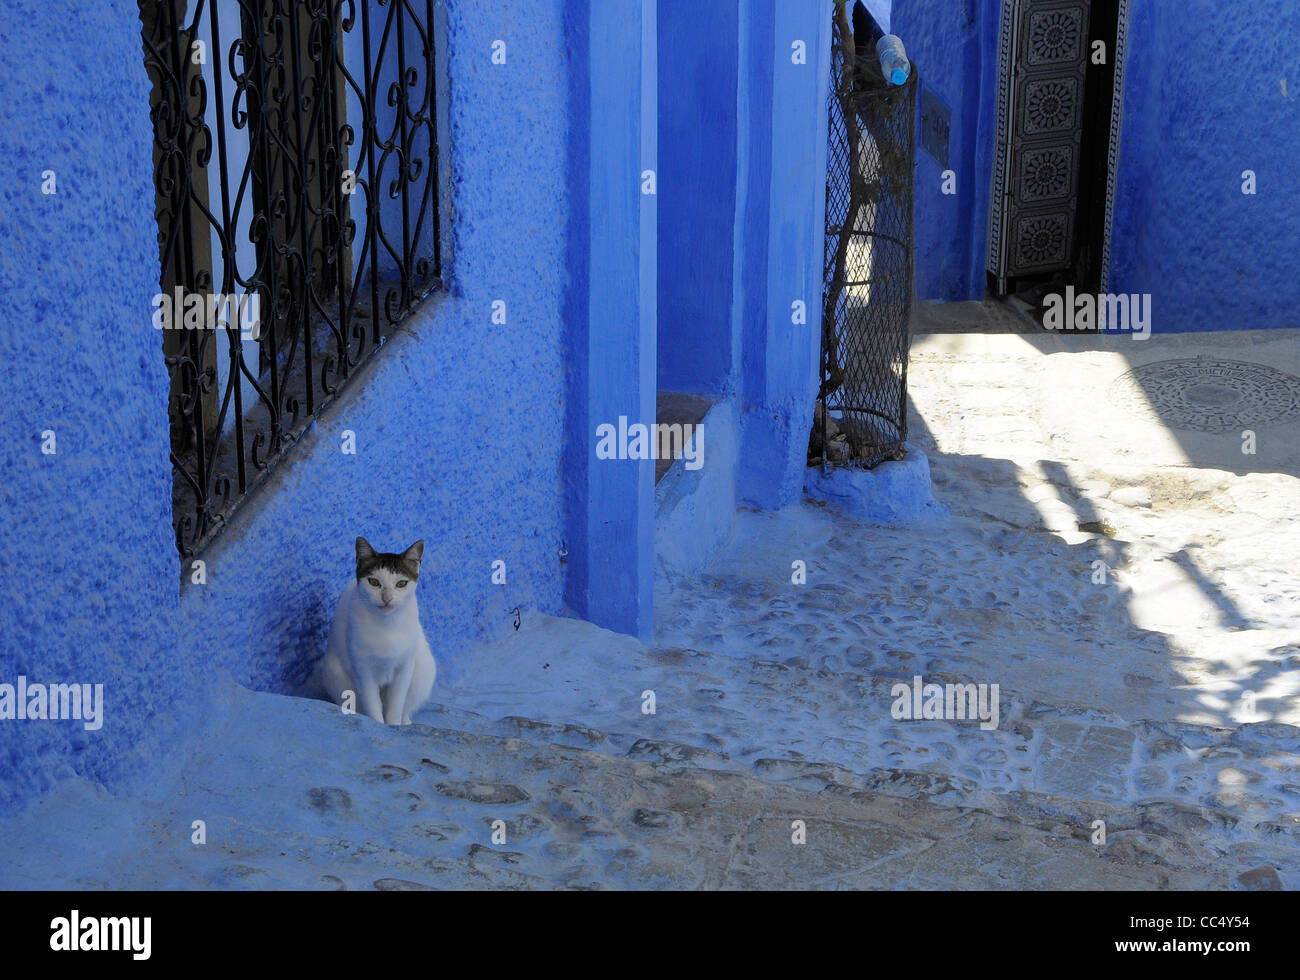 Un chat dans les rues de Chefchaouen, également connu sous le nom de Chaouen, un village avec des murs peints en blanc et bleu dans le nord du Maroc. Banque D'Images